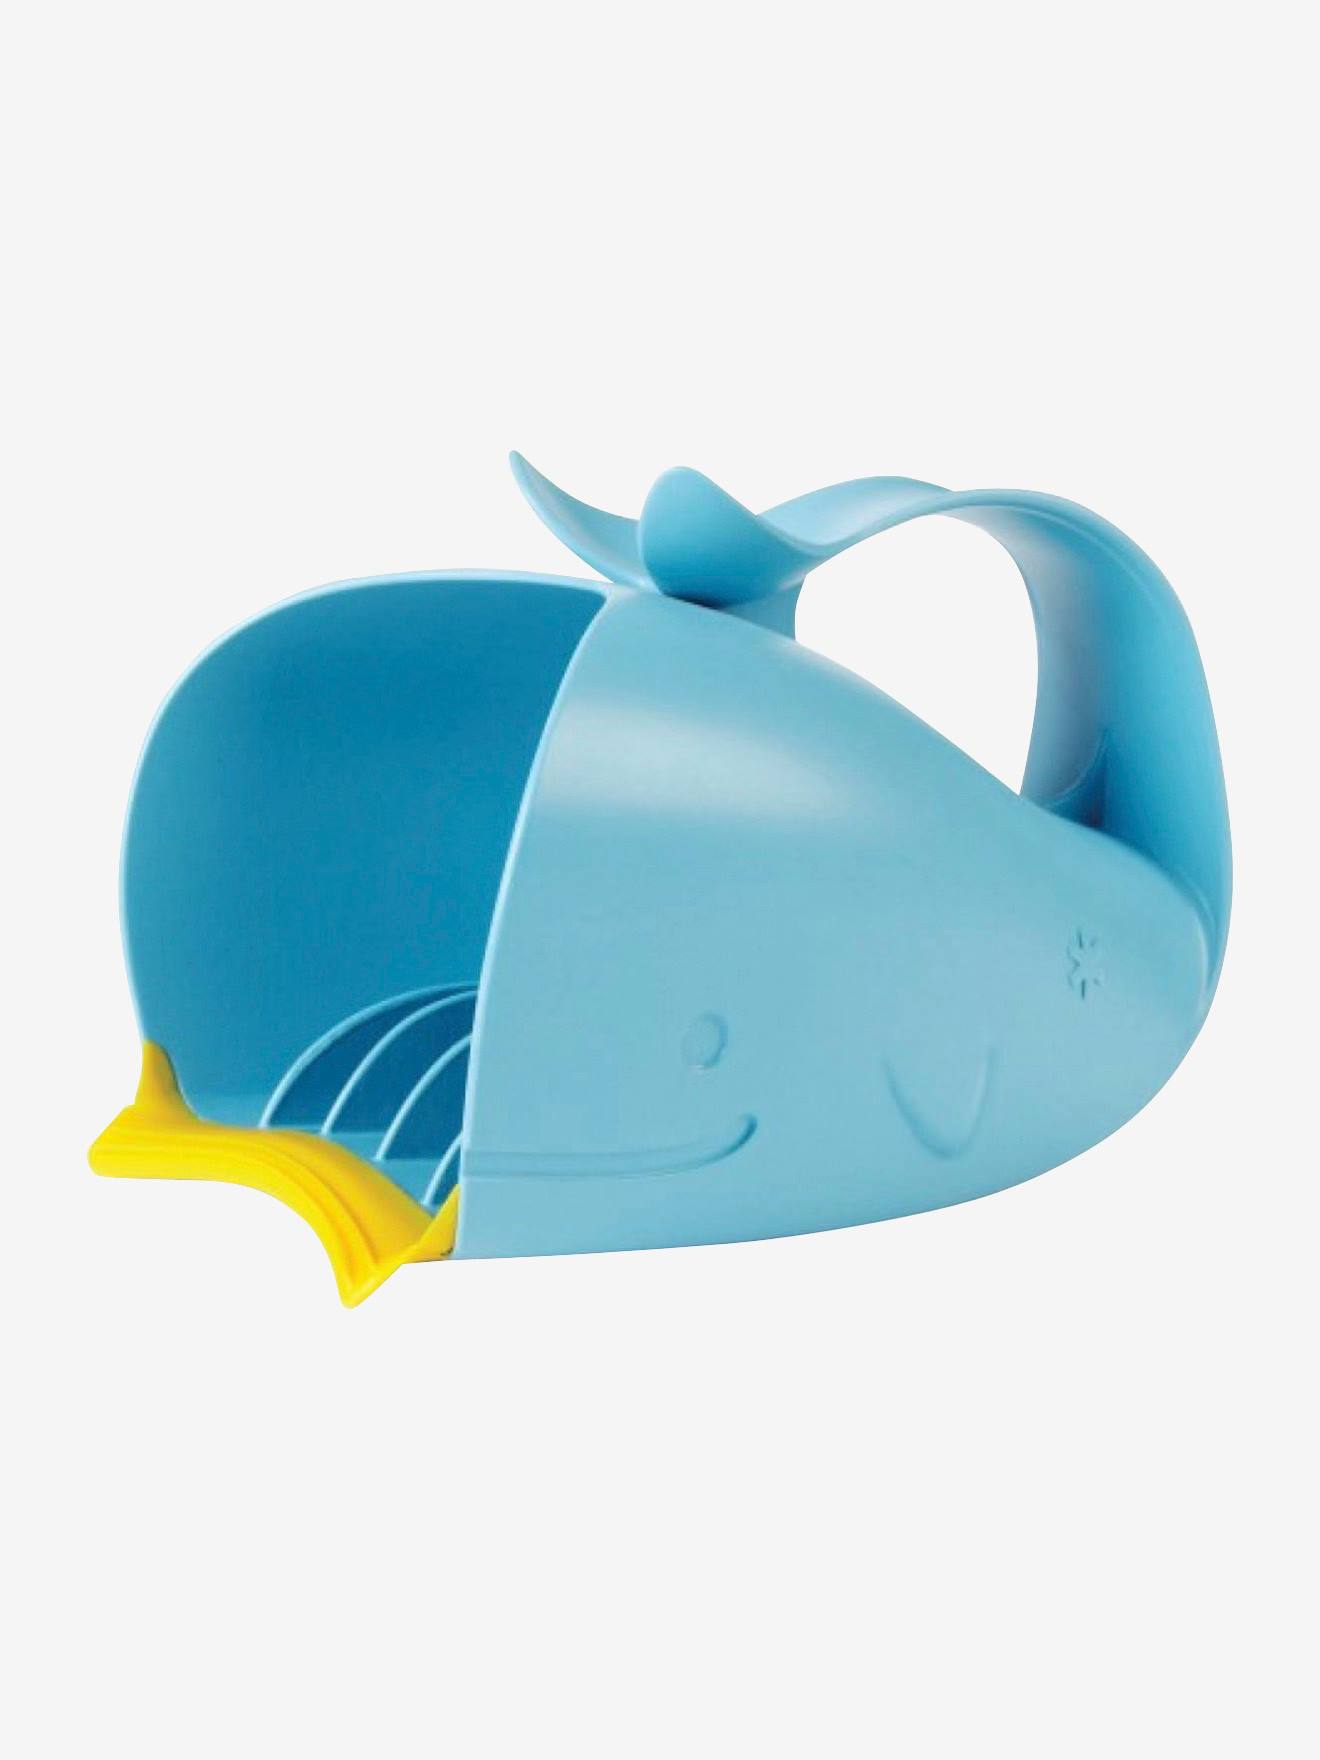 Jarra de baño para aclarar cabeza Moby SKIP HOP azul claro liso con motivos  - Skip Hop